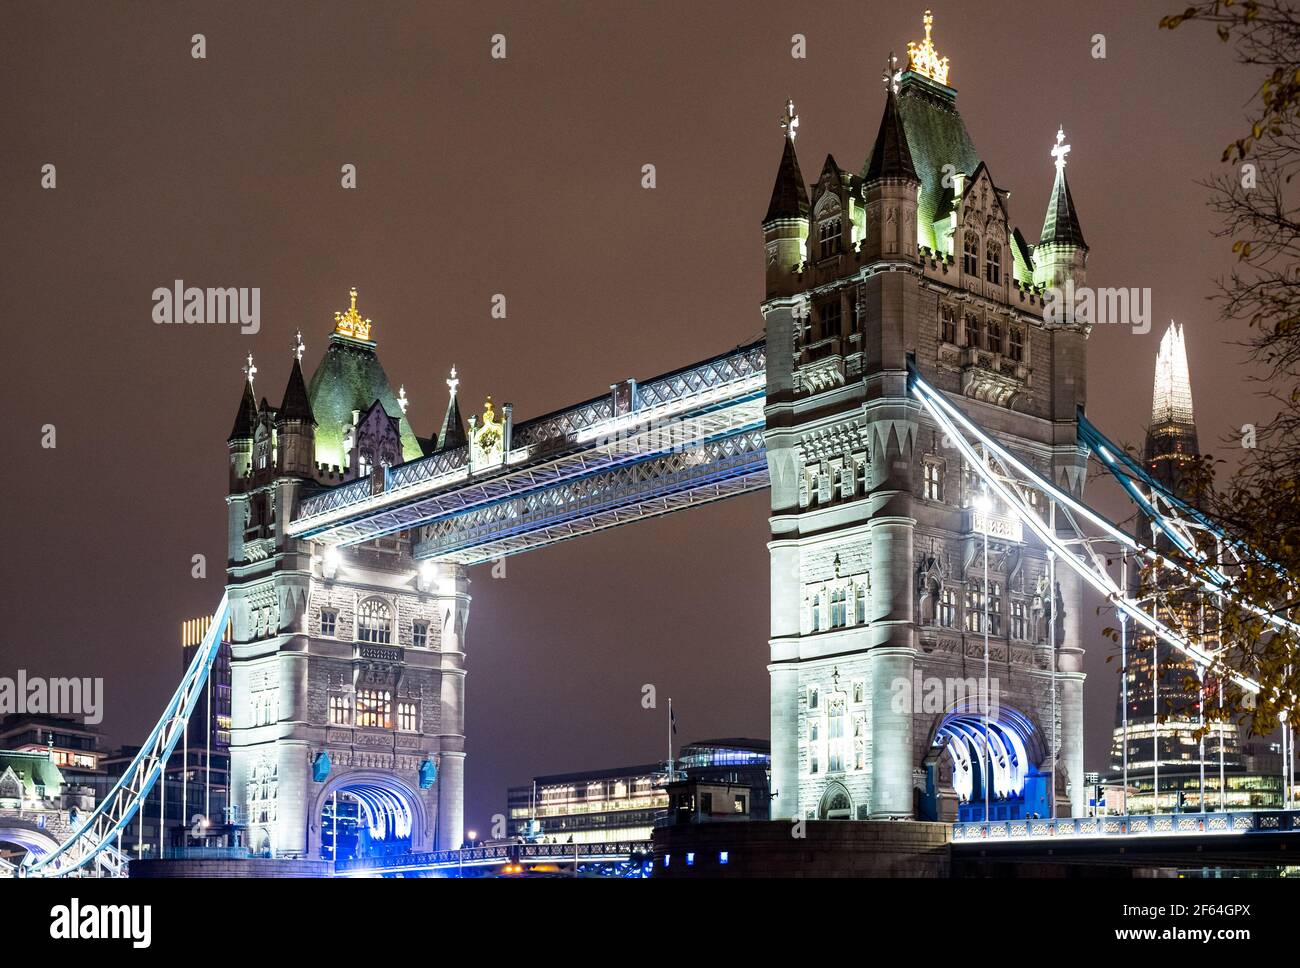 Vue nocturne du célèbre Tower Bridge dans la capitale de Londres Ville du Royaume-Uni - concept d'architecture et de voyage avec monument majestueux Banque D'Images